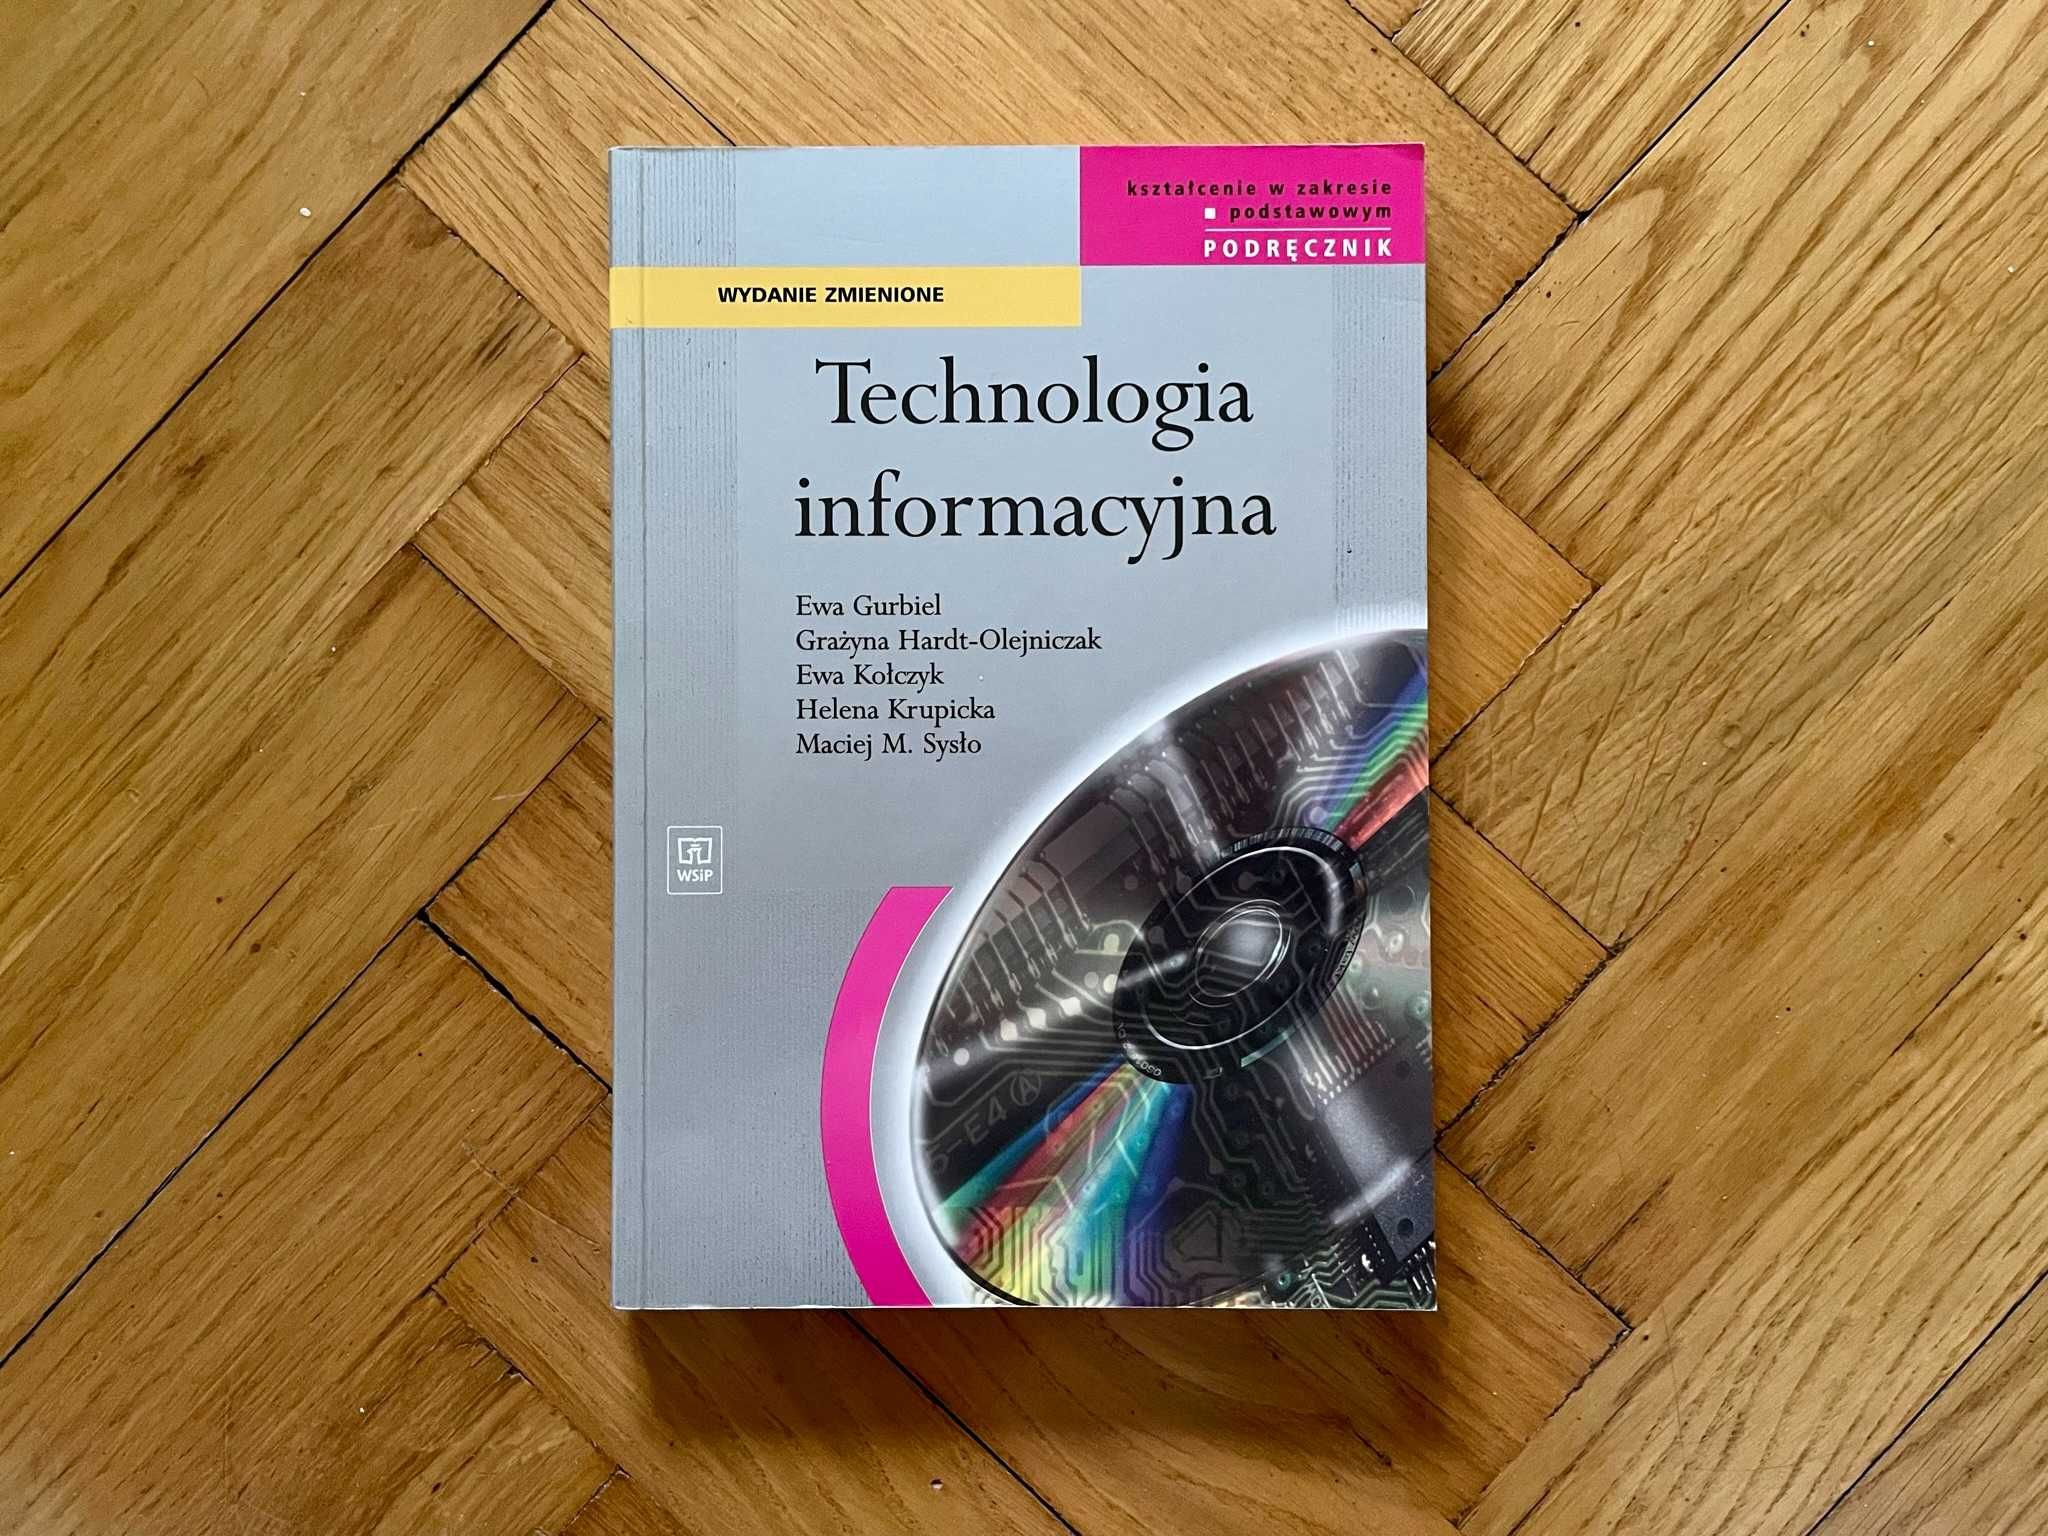 Podręcznik do technologii informacyjnej do liceum + płyta CD